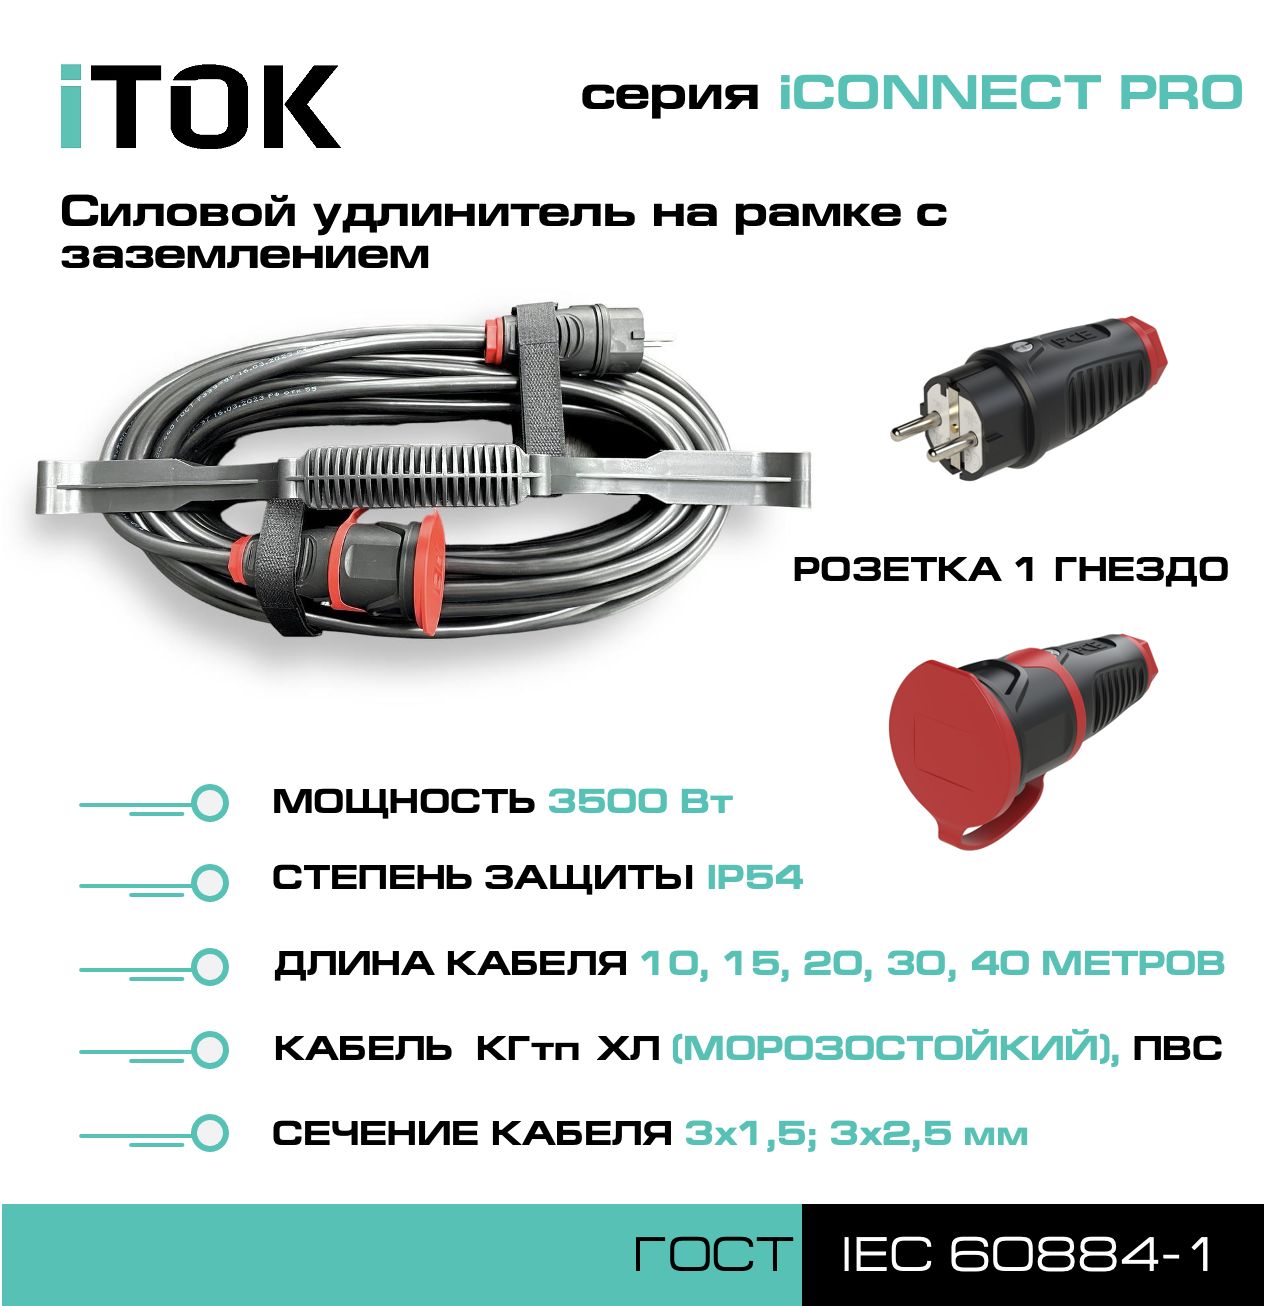 Удлинитель на рамке iTOK iCONNECT PRO с заземлением КГтп-ХЛ 3х1,5 мм 1 гнездо IP54 15 м